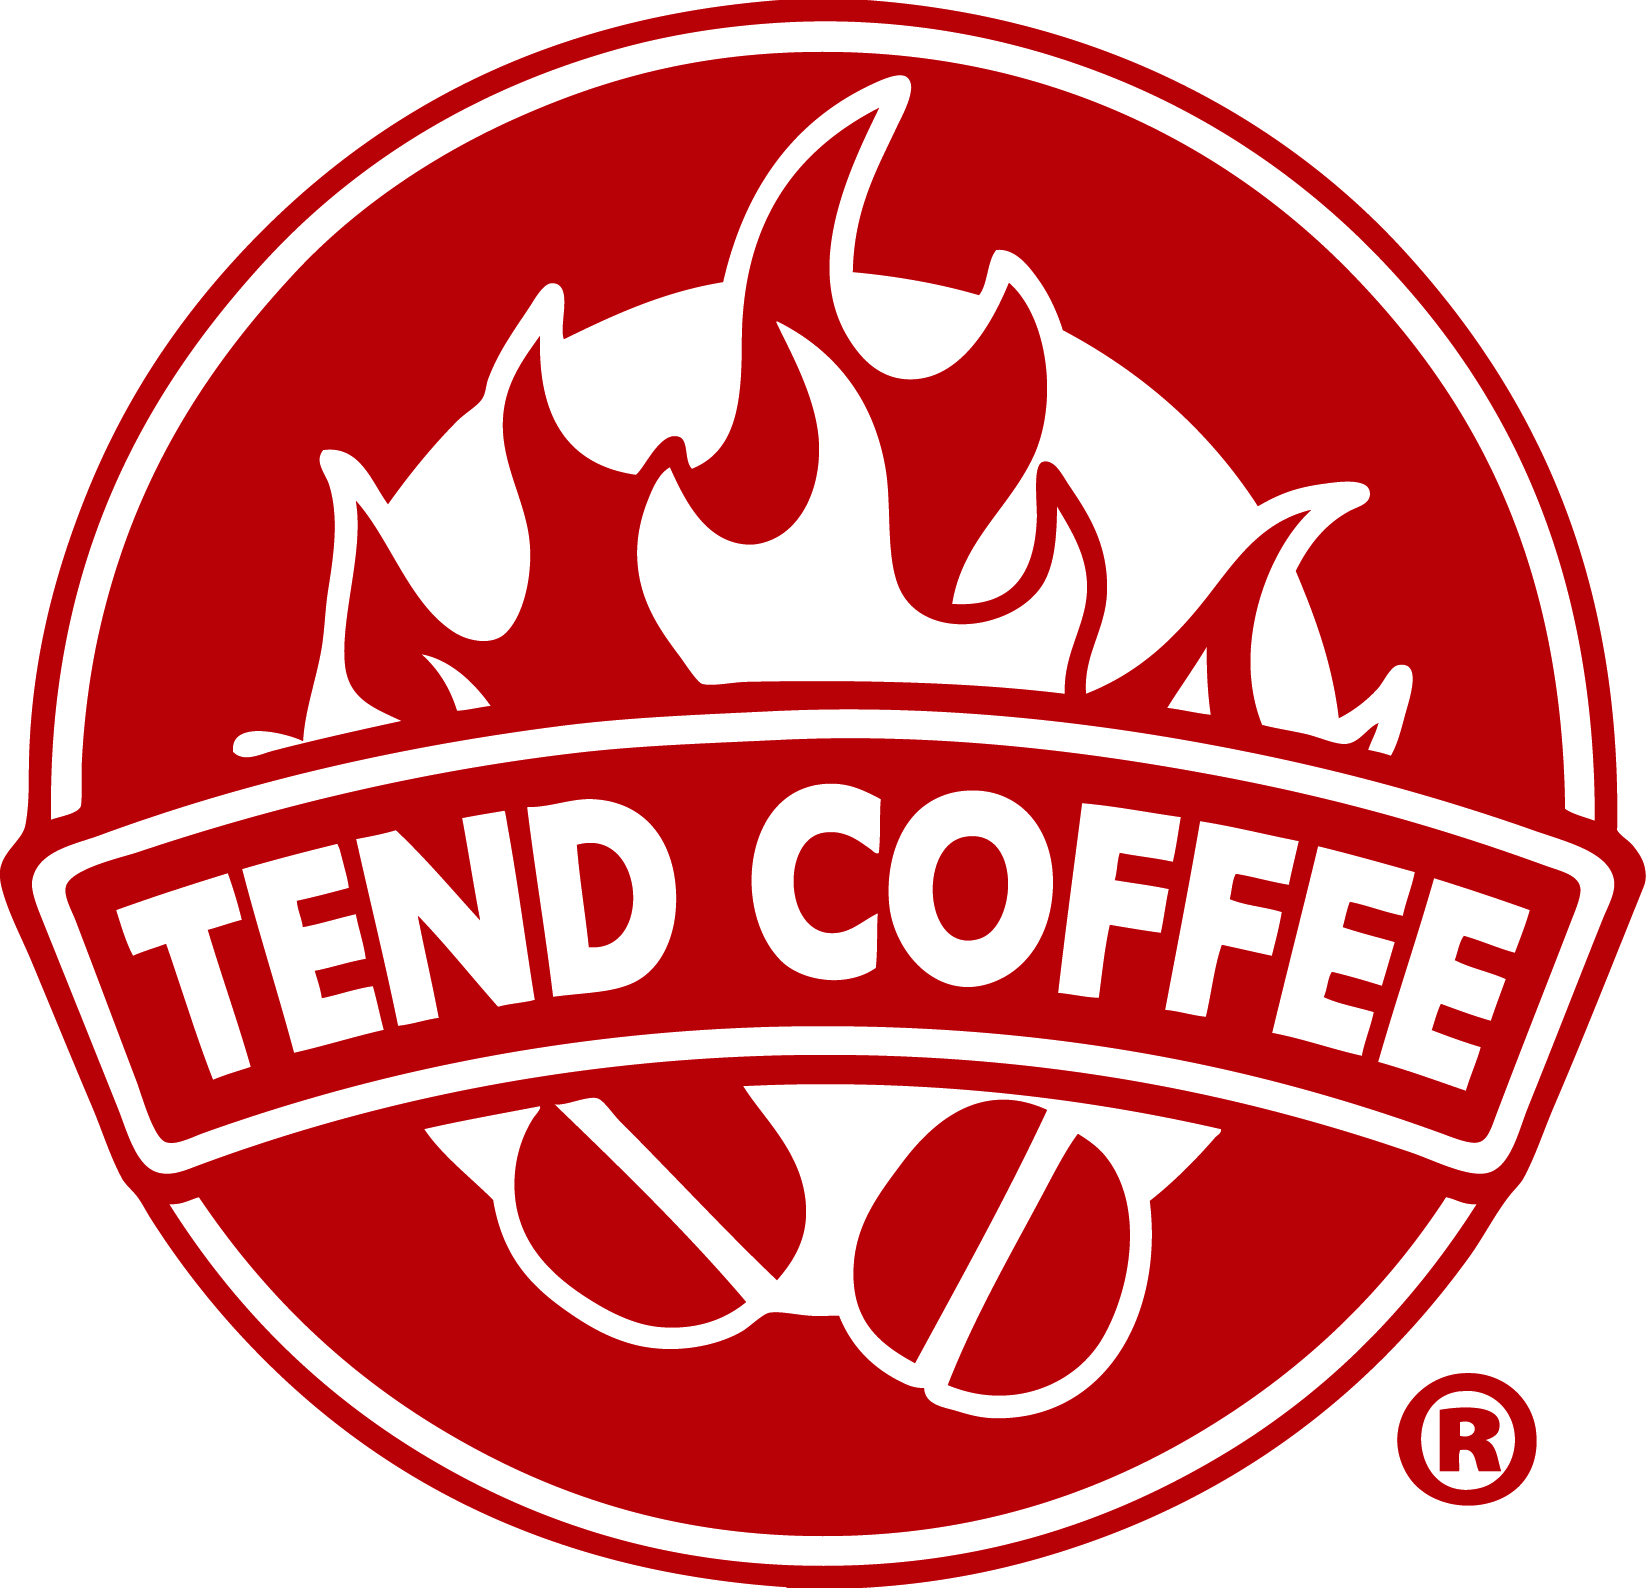 Tend Coffee